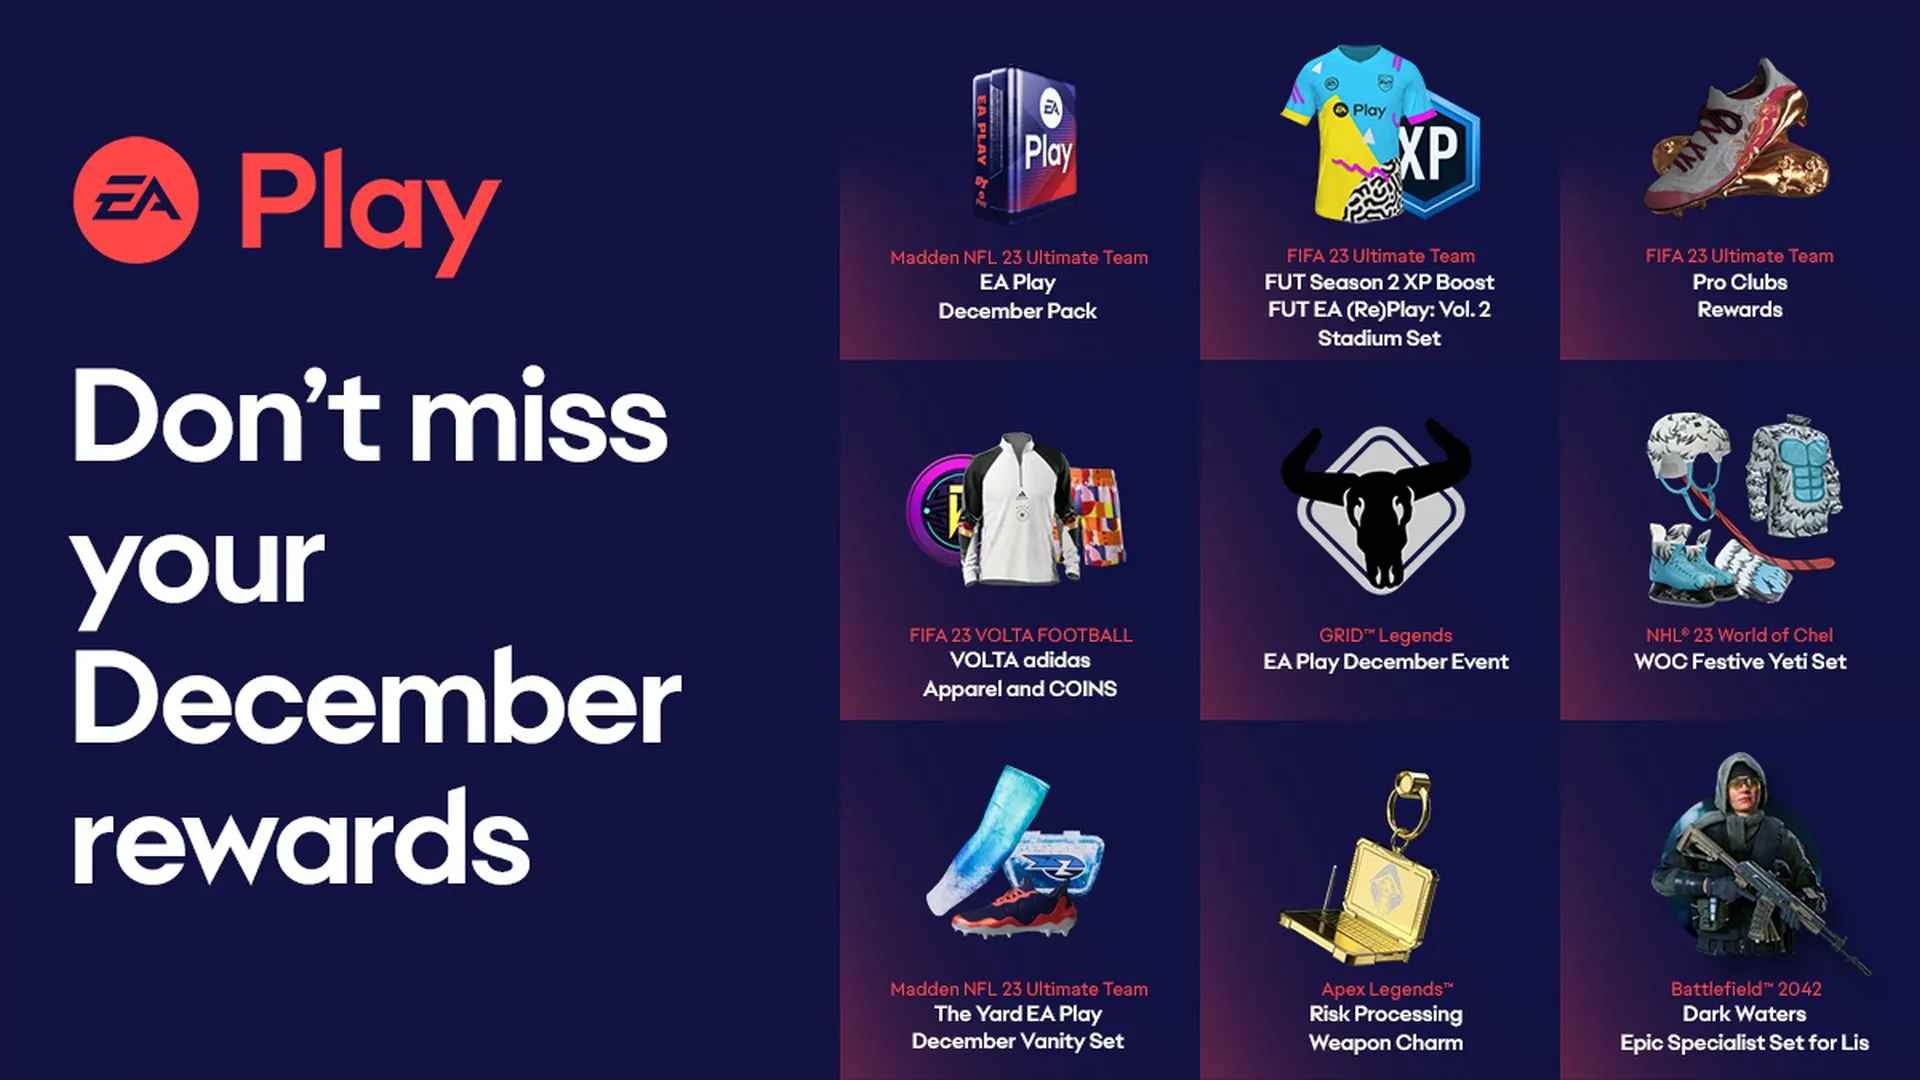 Эти 11 бонусов доступны по Game Pass Ultimate за счет EA Play в декабре